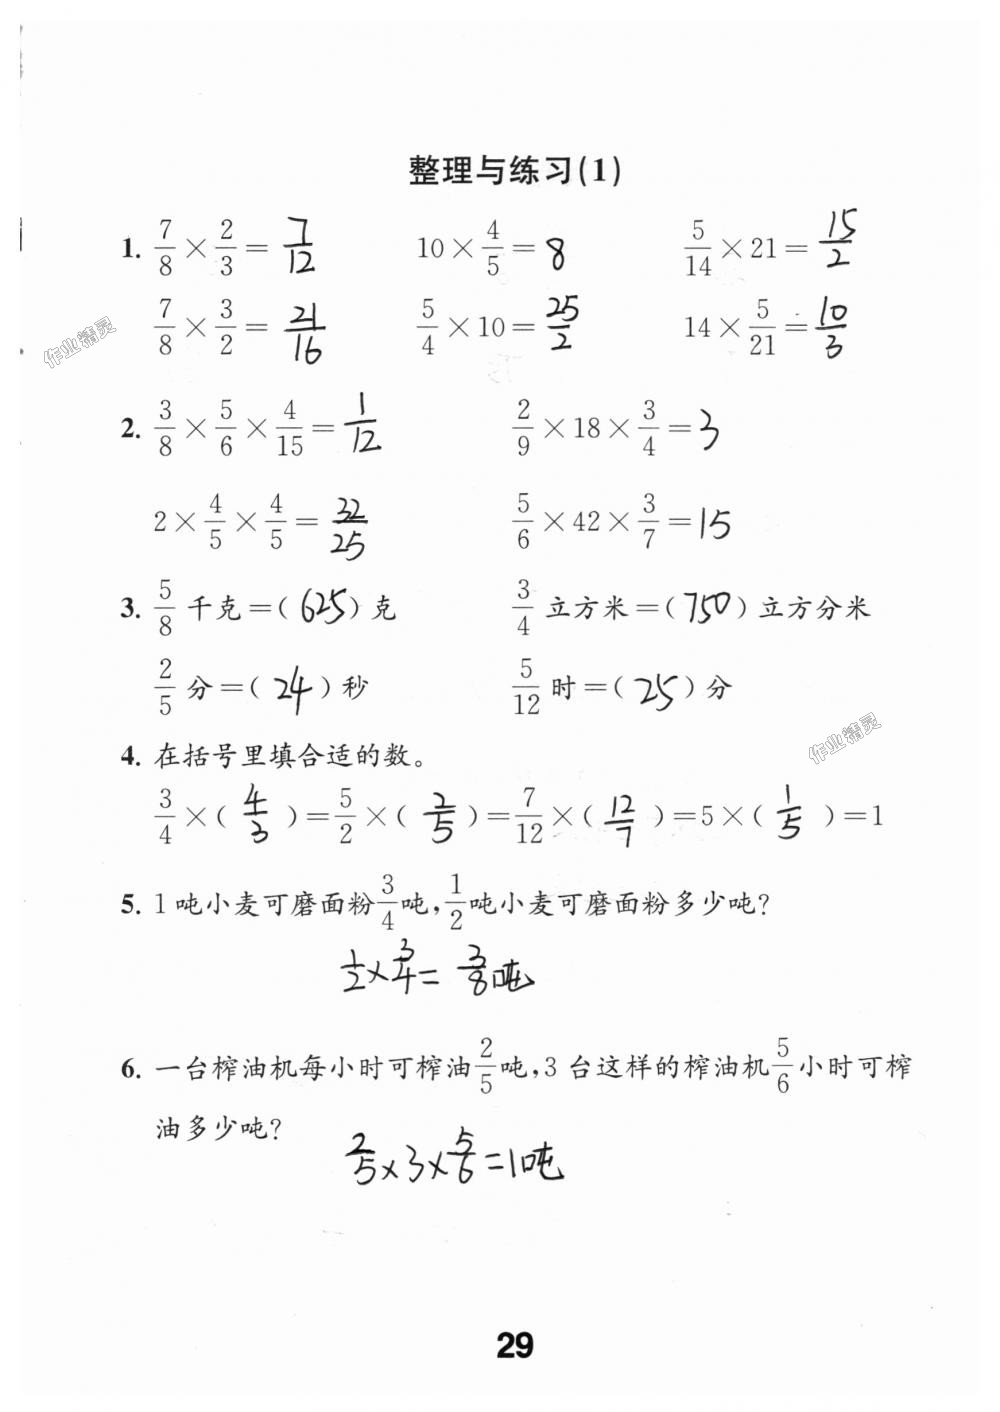 2018年数学补充习题六年级上册苏教版江苏凤凰教育出版社 第29页